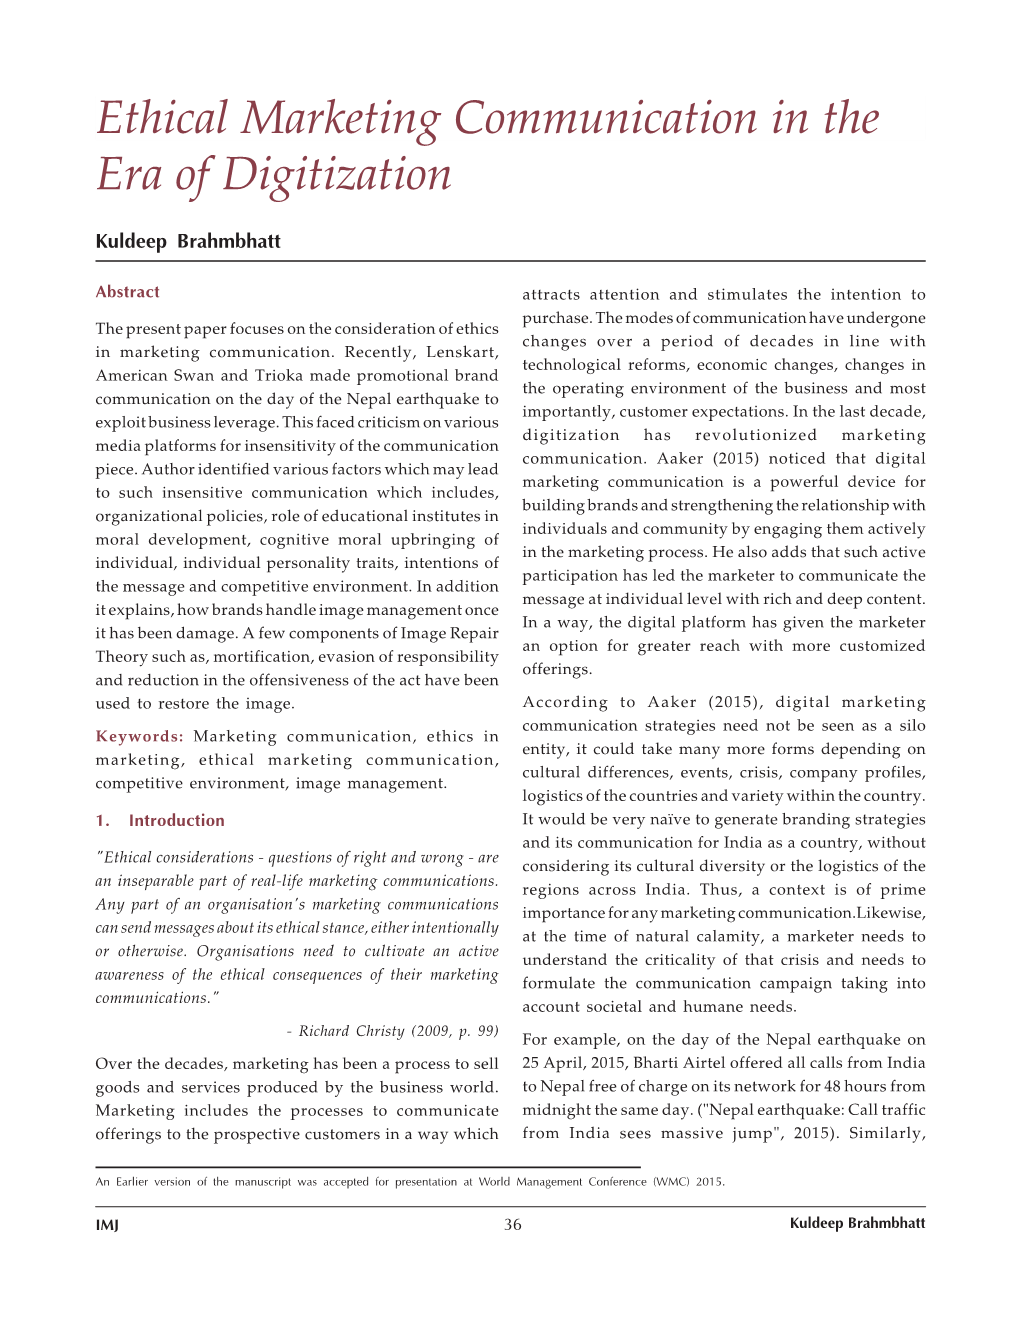 Ethical Marketing Communication in the Era of Digitization/Kuldeep Brahmbhatt